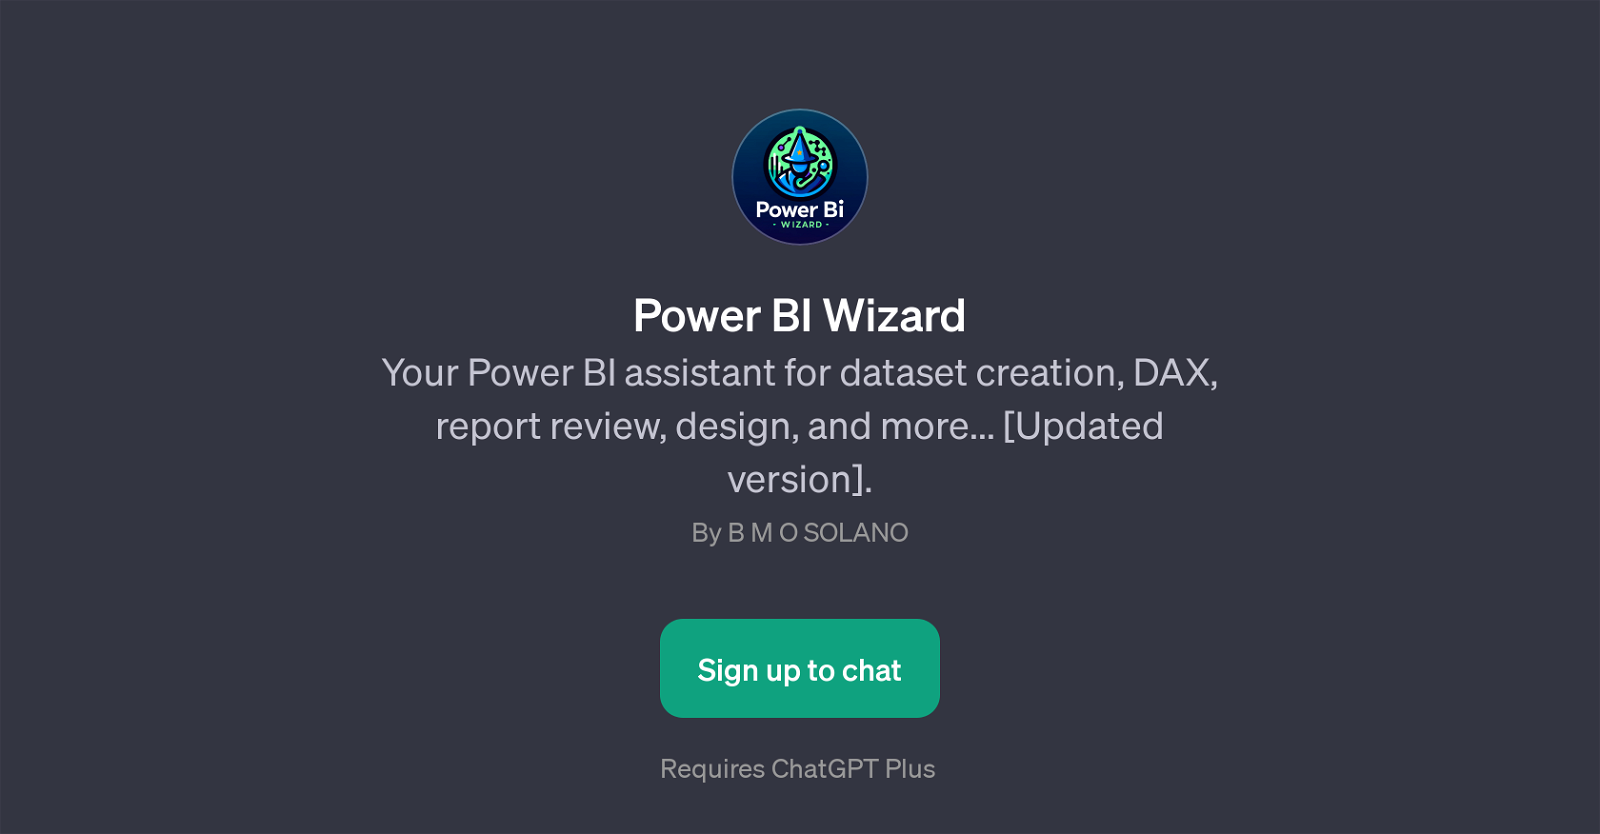 Power BI Wizard website